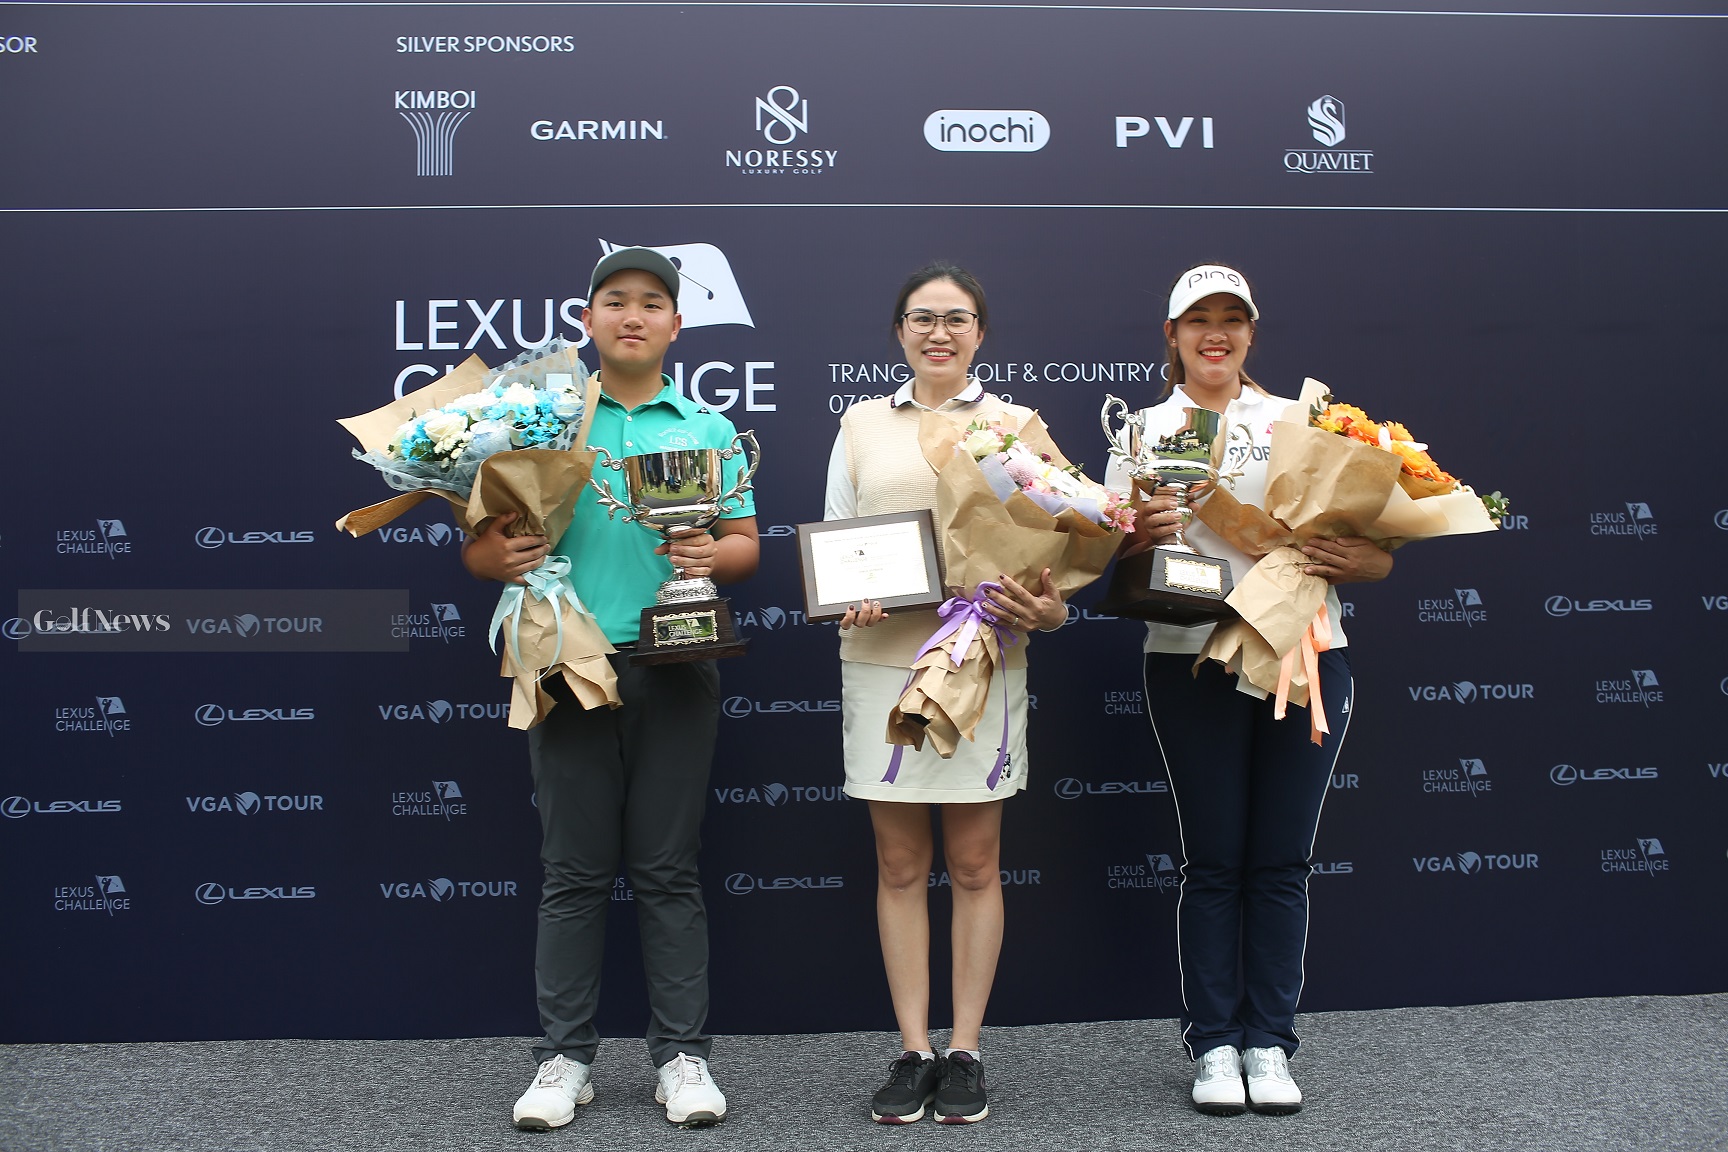 Trang An Golf & Country Club trao phần thưởng "danh dự" cho 2 nhà vô địch Lexus Challenge